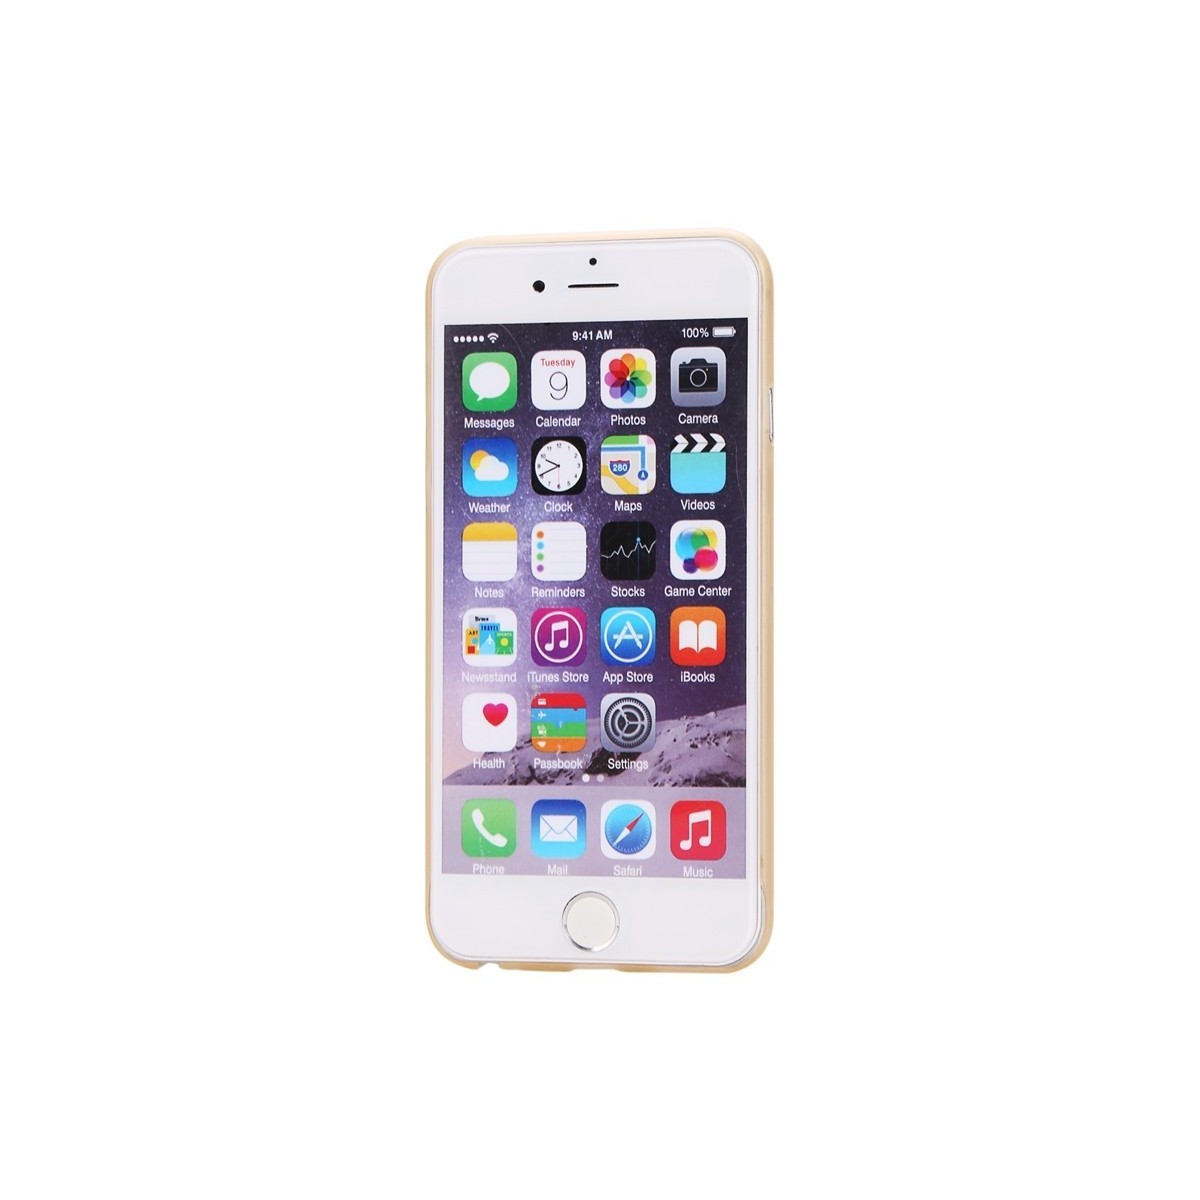 Coque Ultra Slim Translucide pour iPhone 6/6S Orange